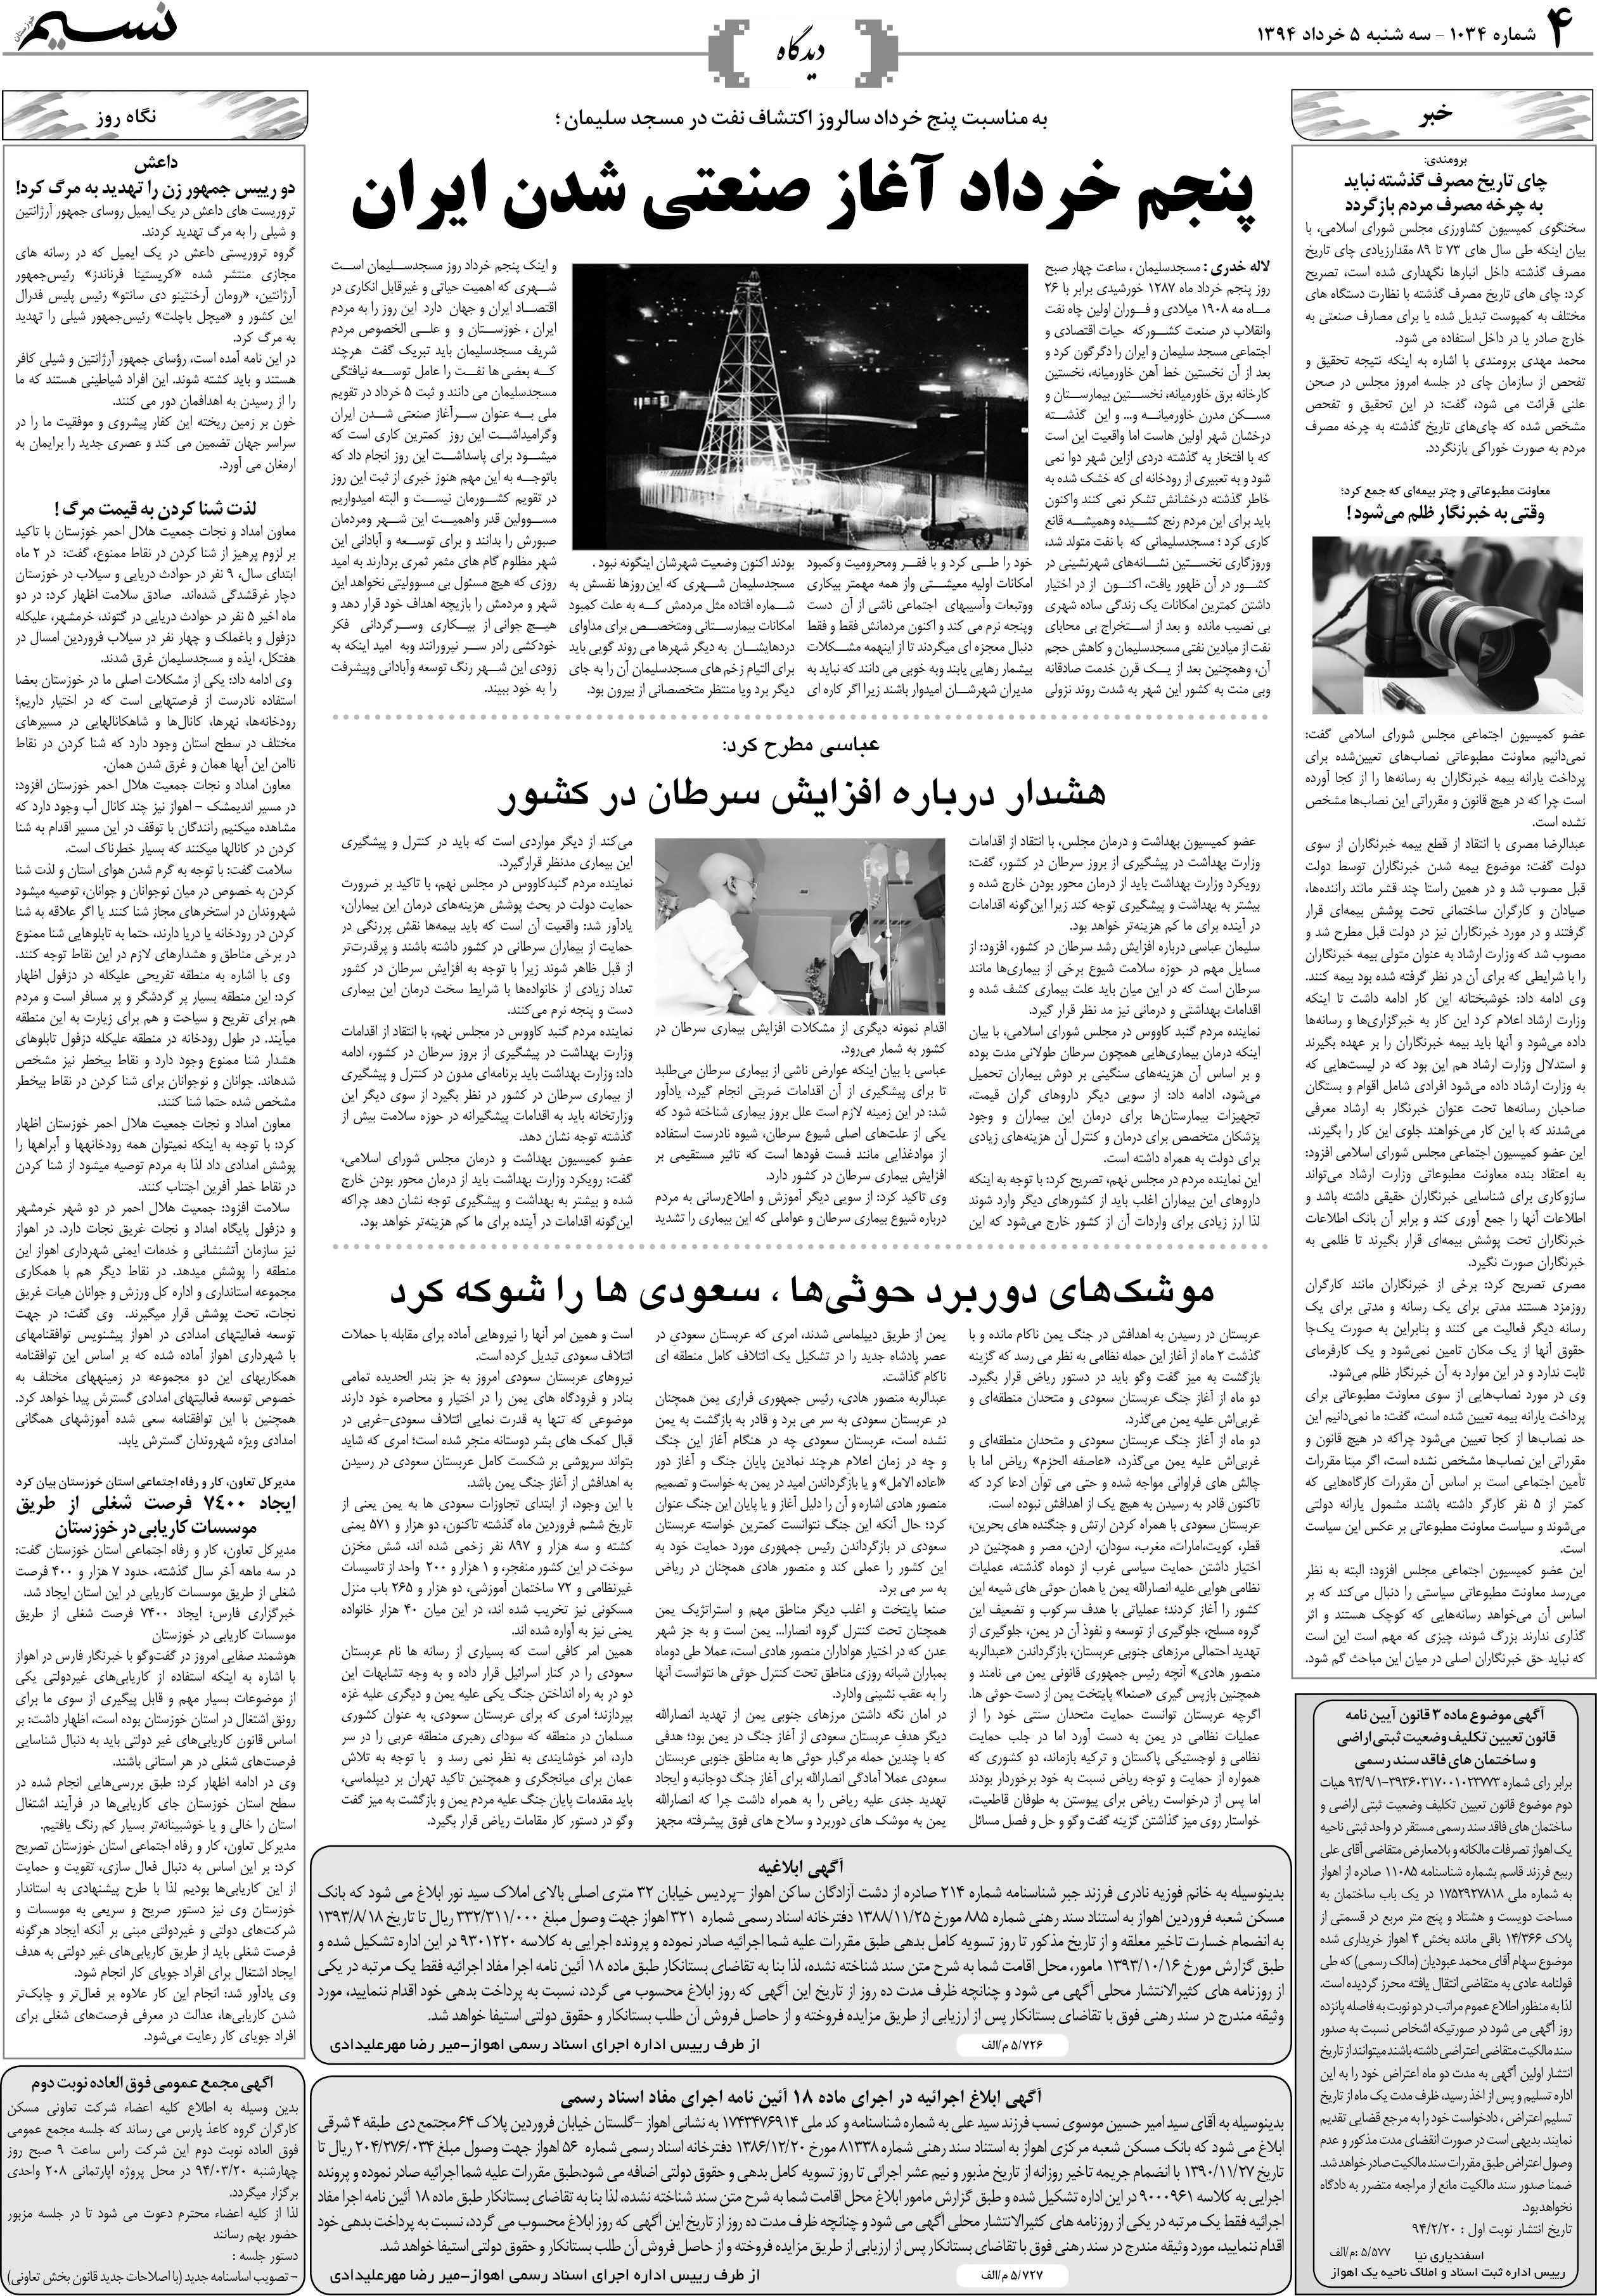 صفحه دیدگاه روزنامه نسیم شماره 1034